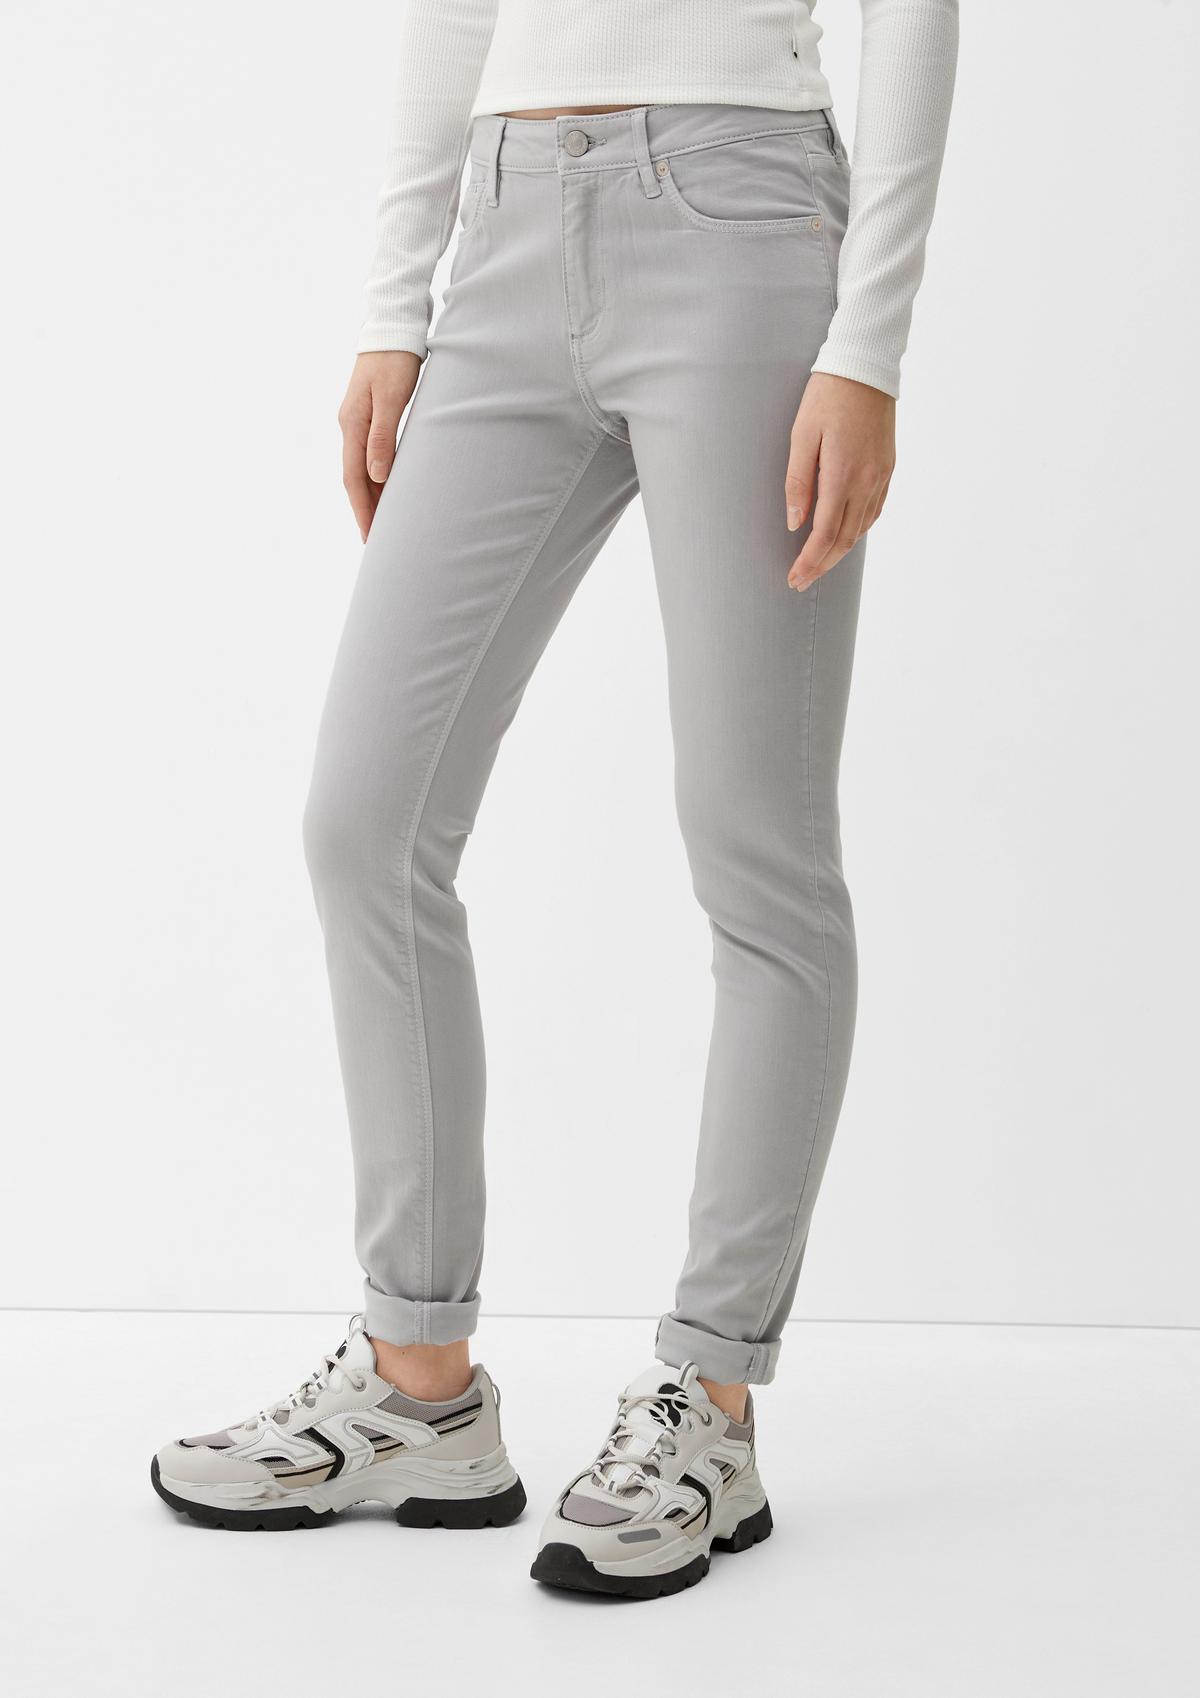 jeans design five-pocket a - in fit: Skinny soft rose